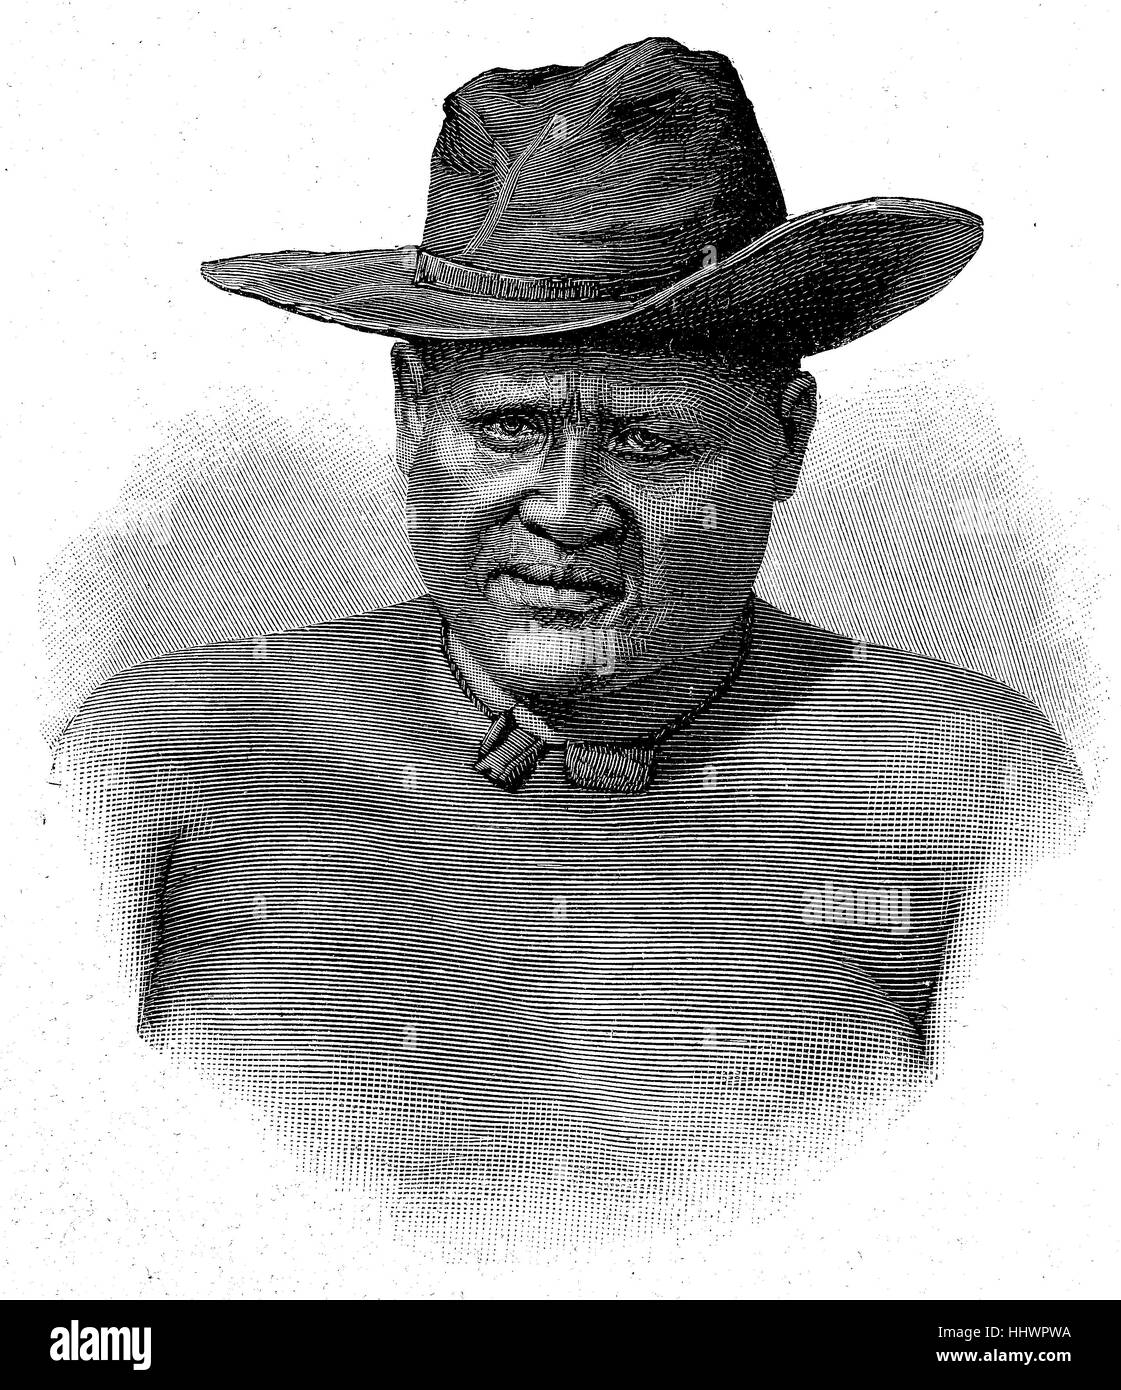 Lobengula, 1833 - janvier 23, 1894 dans le Matabeleland, était le deuxième et dans le même temps, le dernier roi du royaume d'Afrique australe Matabele., image historique ou illustration, publié 1890, l'amélioration numérique Banque D'Images